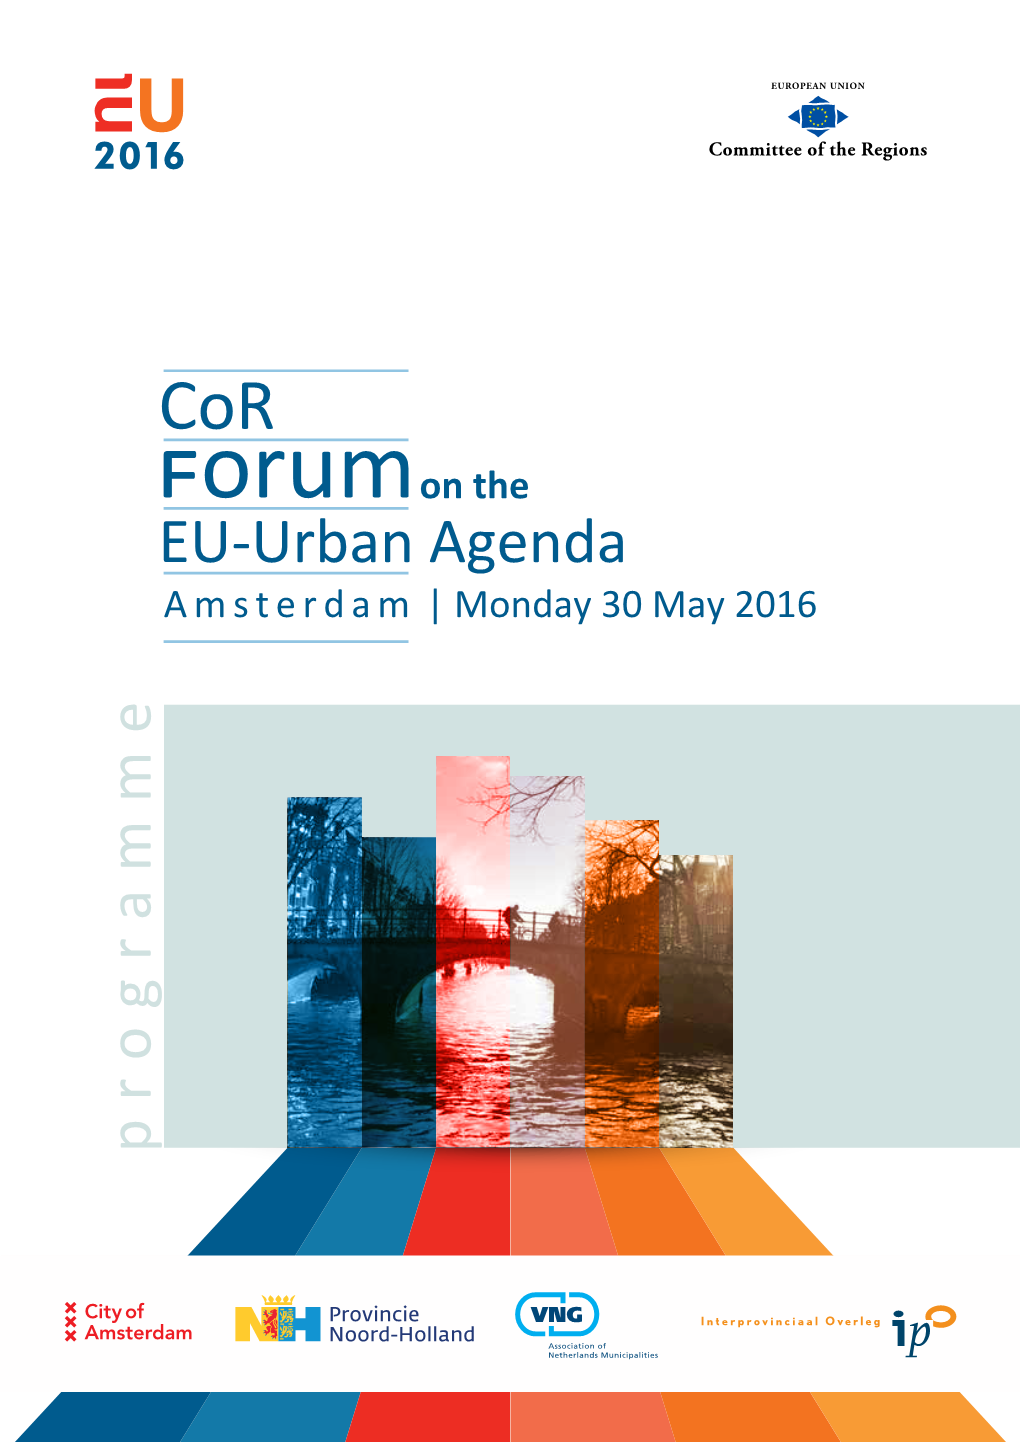 EU Urban Agenda Forum